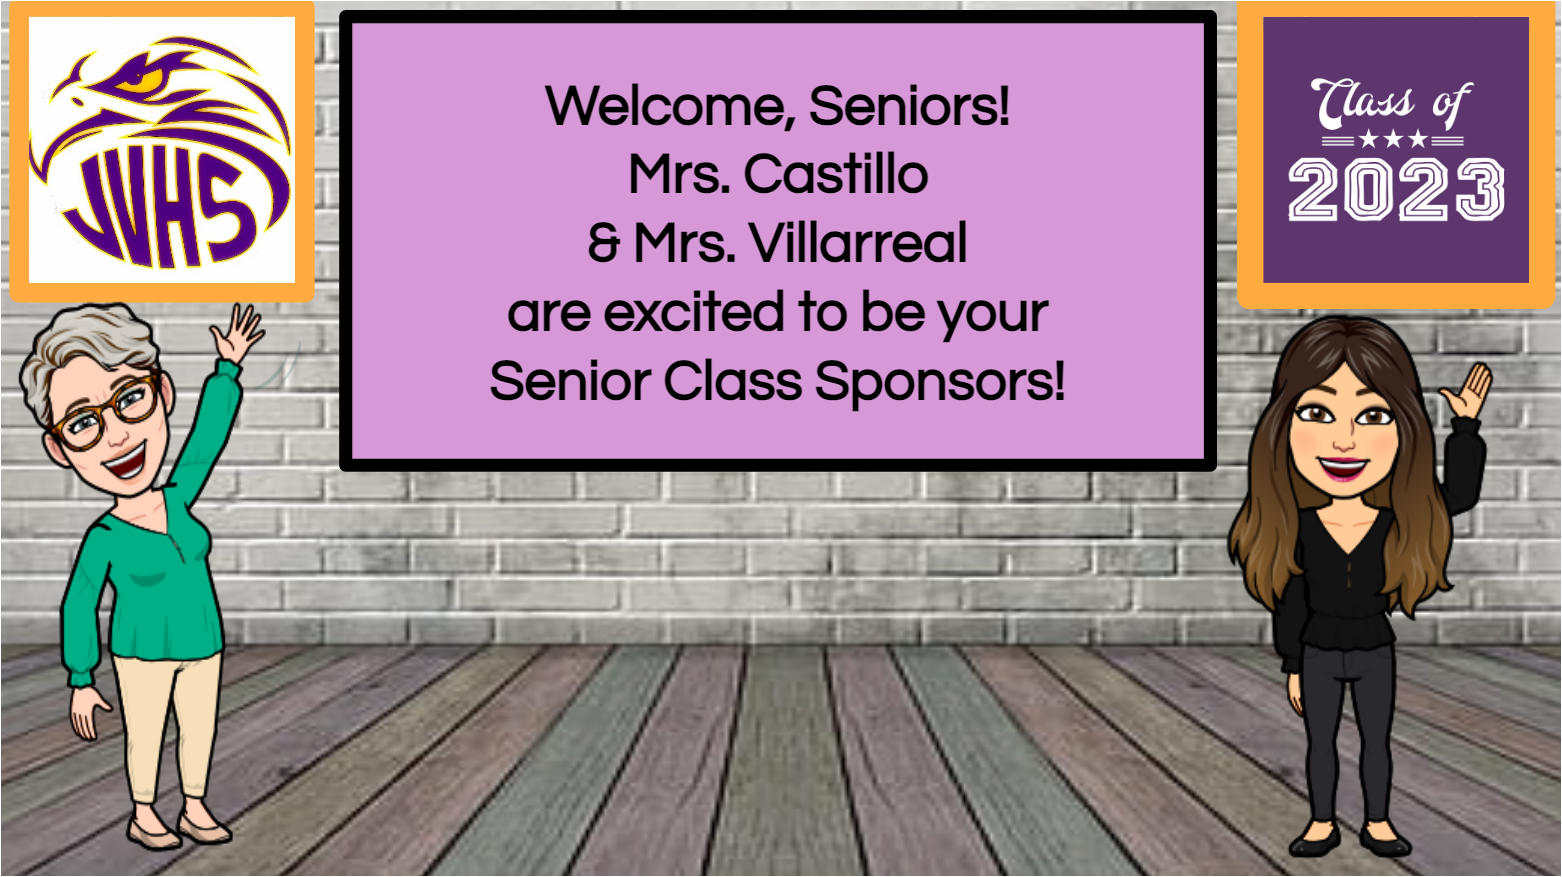 Welcome, Seniors! Class of 2023 sponsors are Mrs. Castillo & Mrs. Villareal